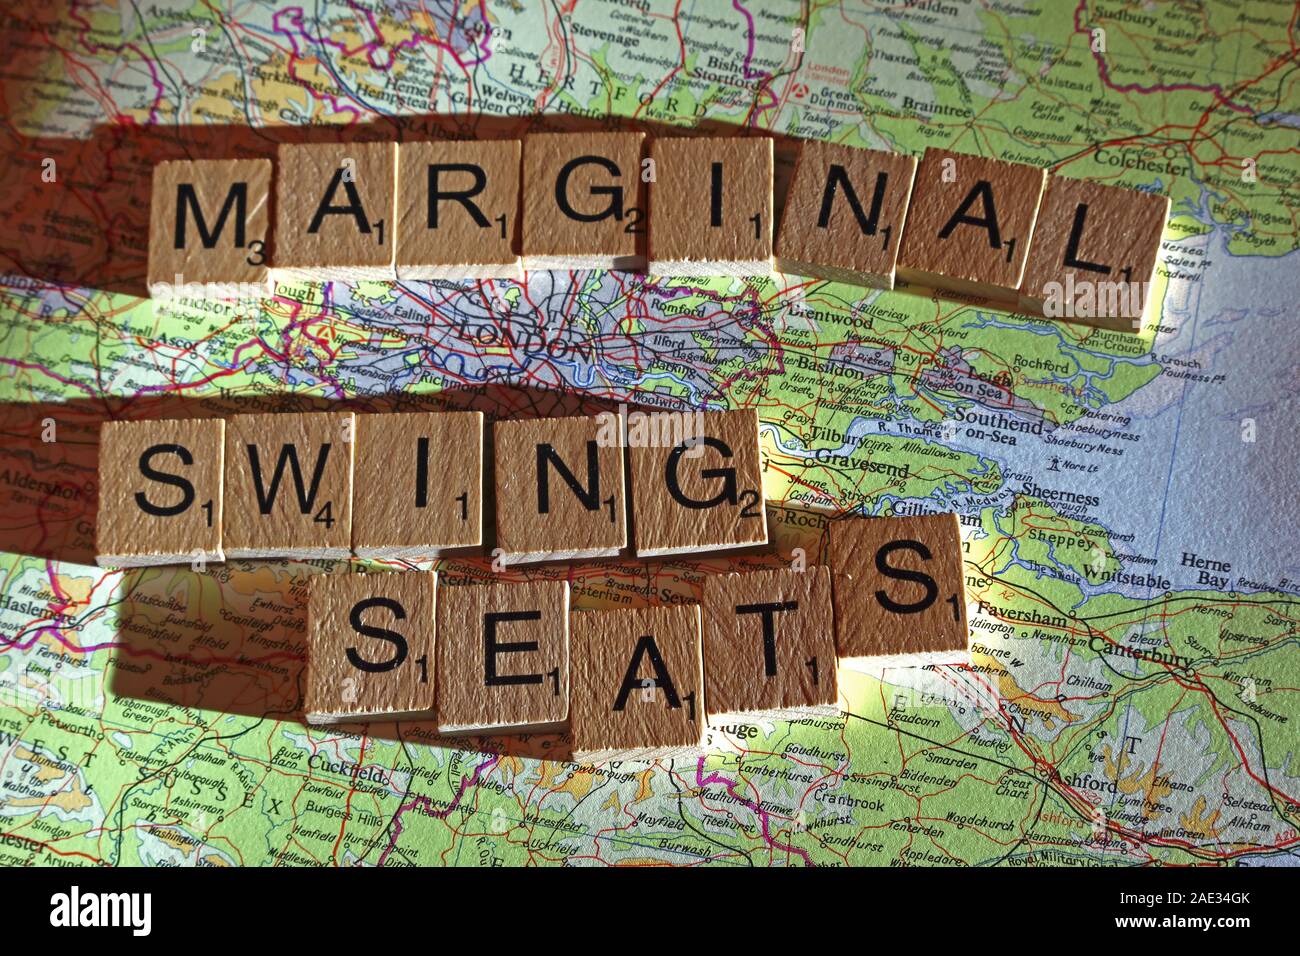 Marginale sedi di rotazione farro Scrabble in lettere su una mappa del Regno Unito - Elezioni generali, alle elezioni politiche di partito leader,,parti,rivendicazioni,dubbi Foto Stock